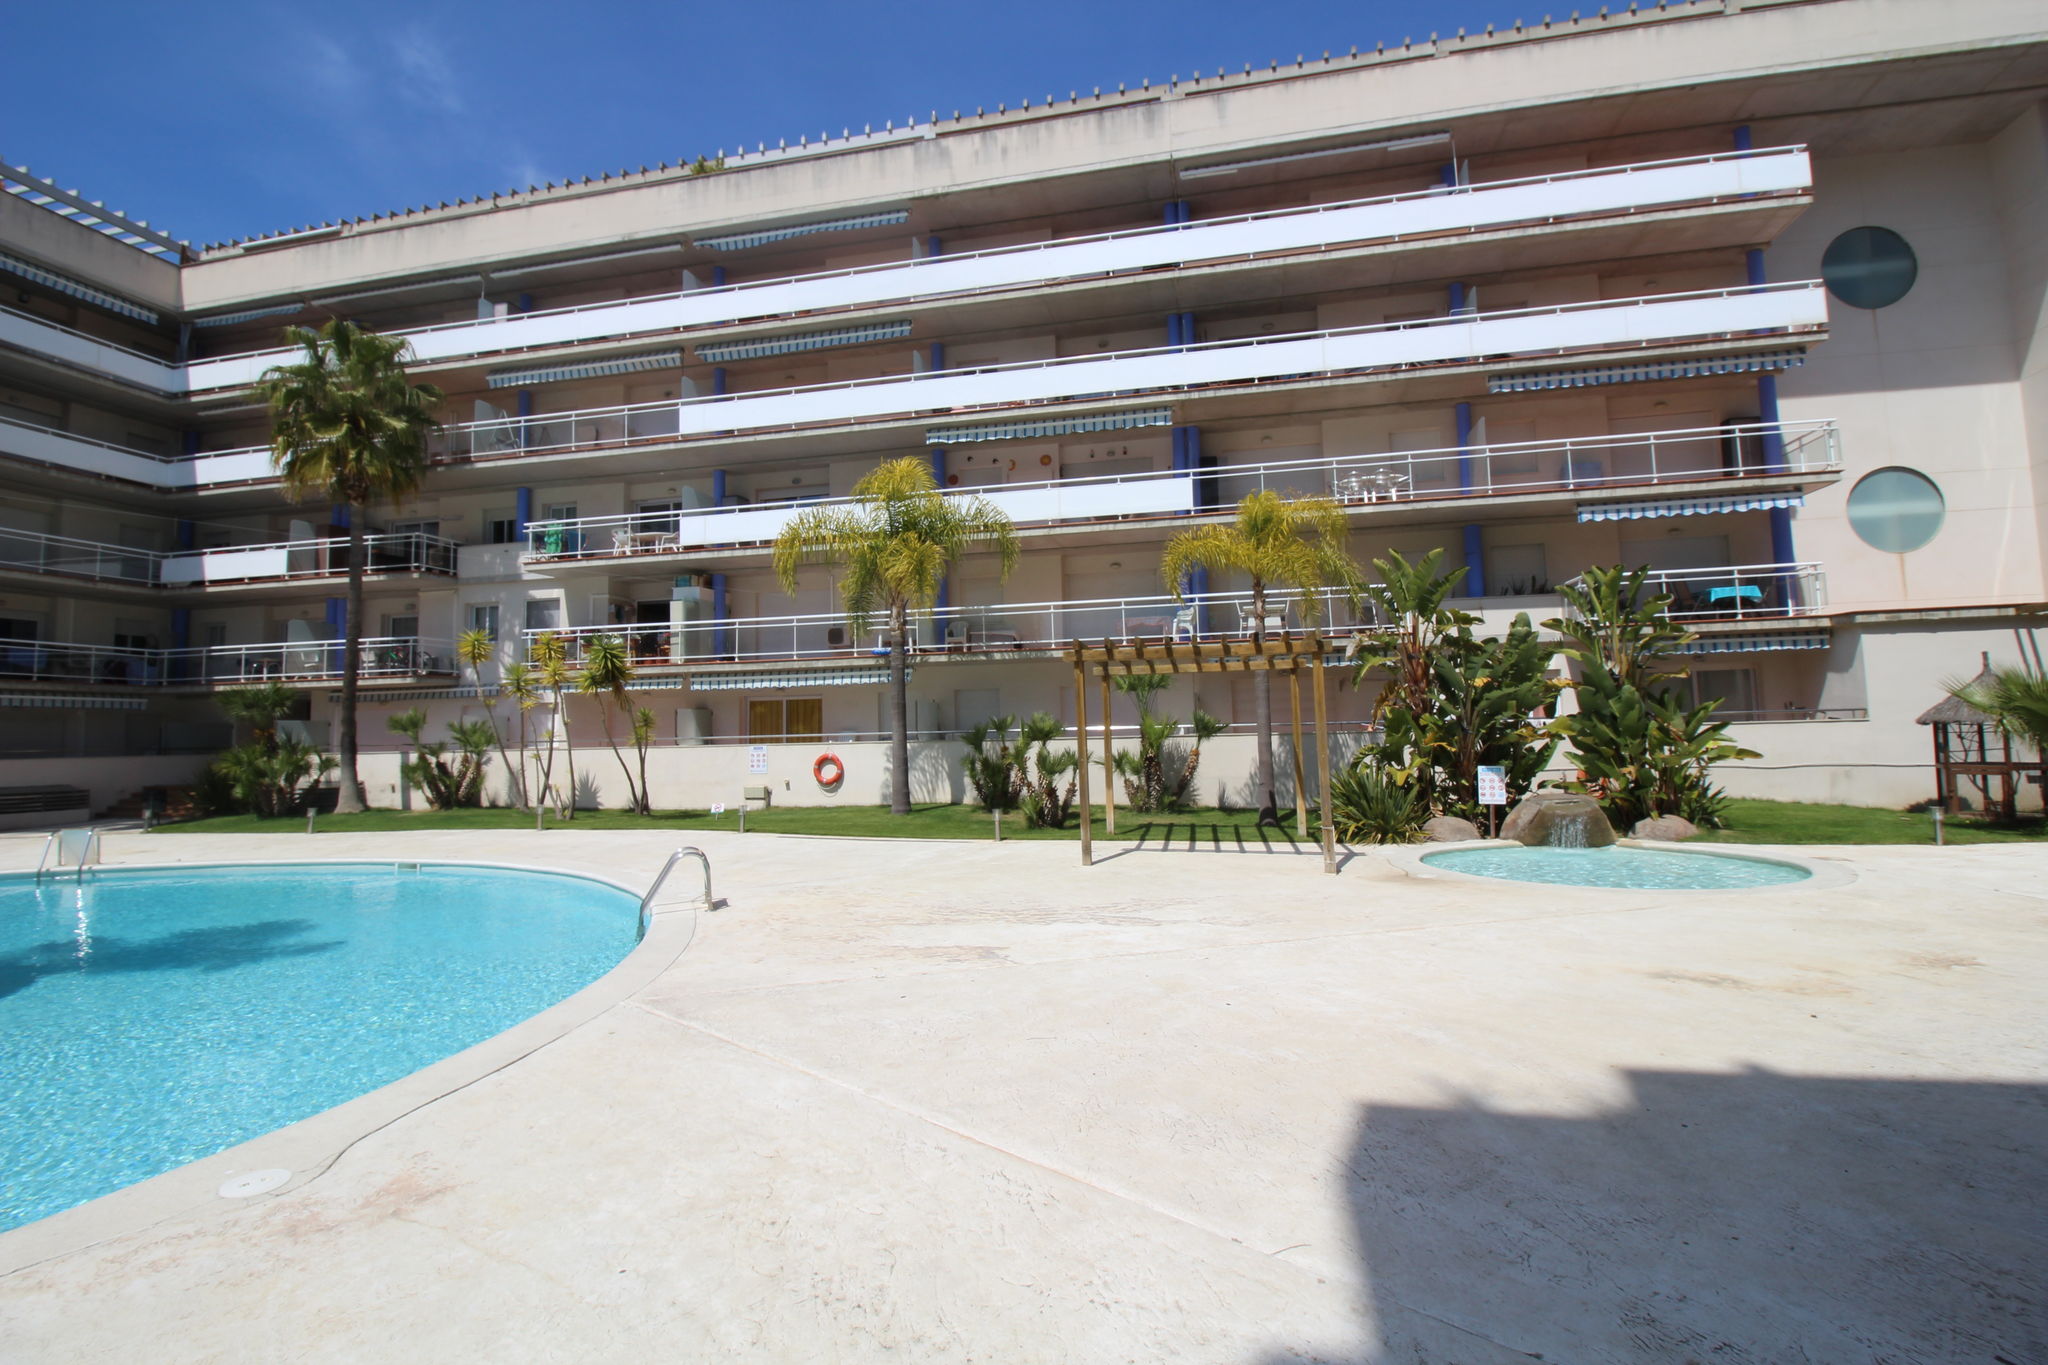 Appartementen complex met gemeenschappelijk zwembad in Santa Margarita (Roses)